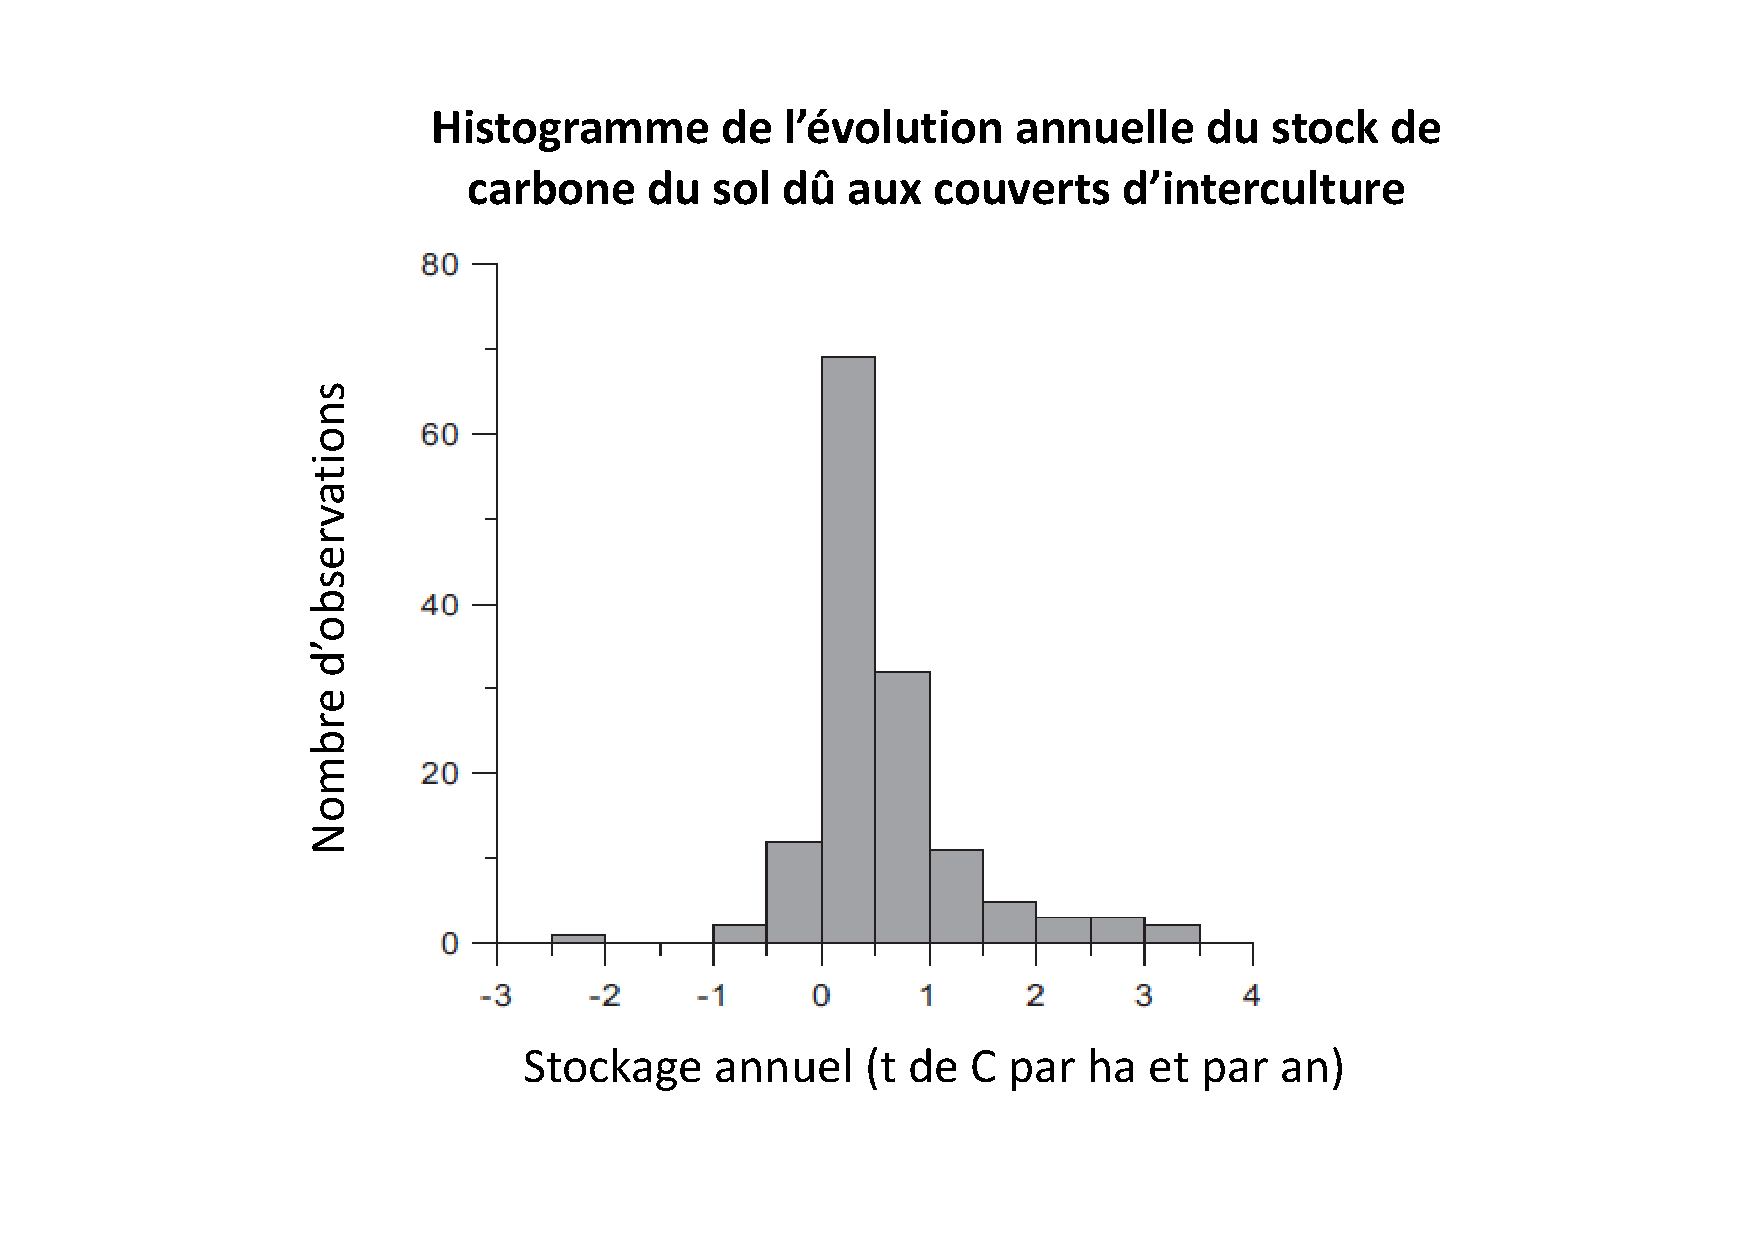 Stockage annuel de carbone sous l'effet des cultures intermédiaires d'après [Poeplau et al. 2015]((https://www.sciencedirect.com/science/article/abs/pii/S0167880914004873?via%3Dihub))